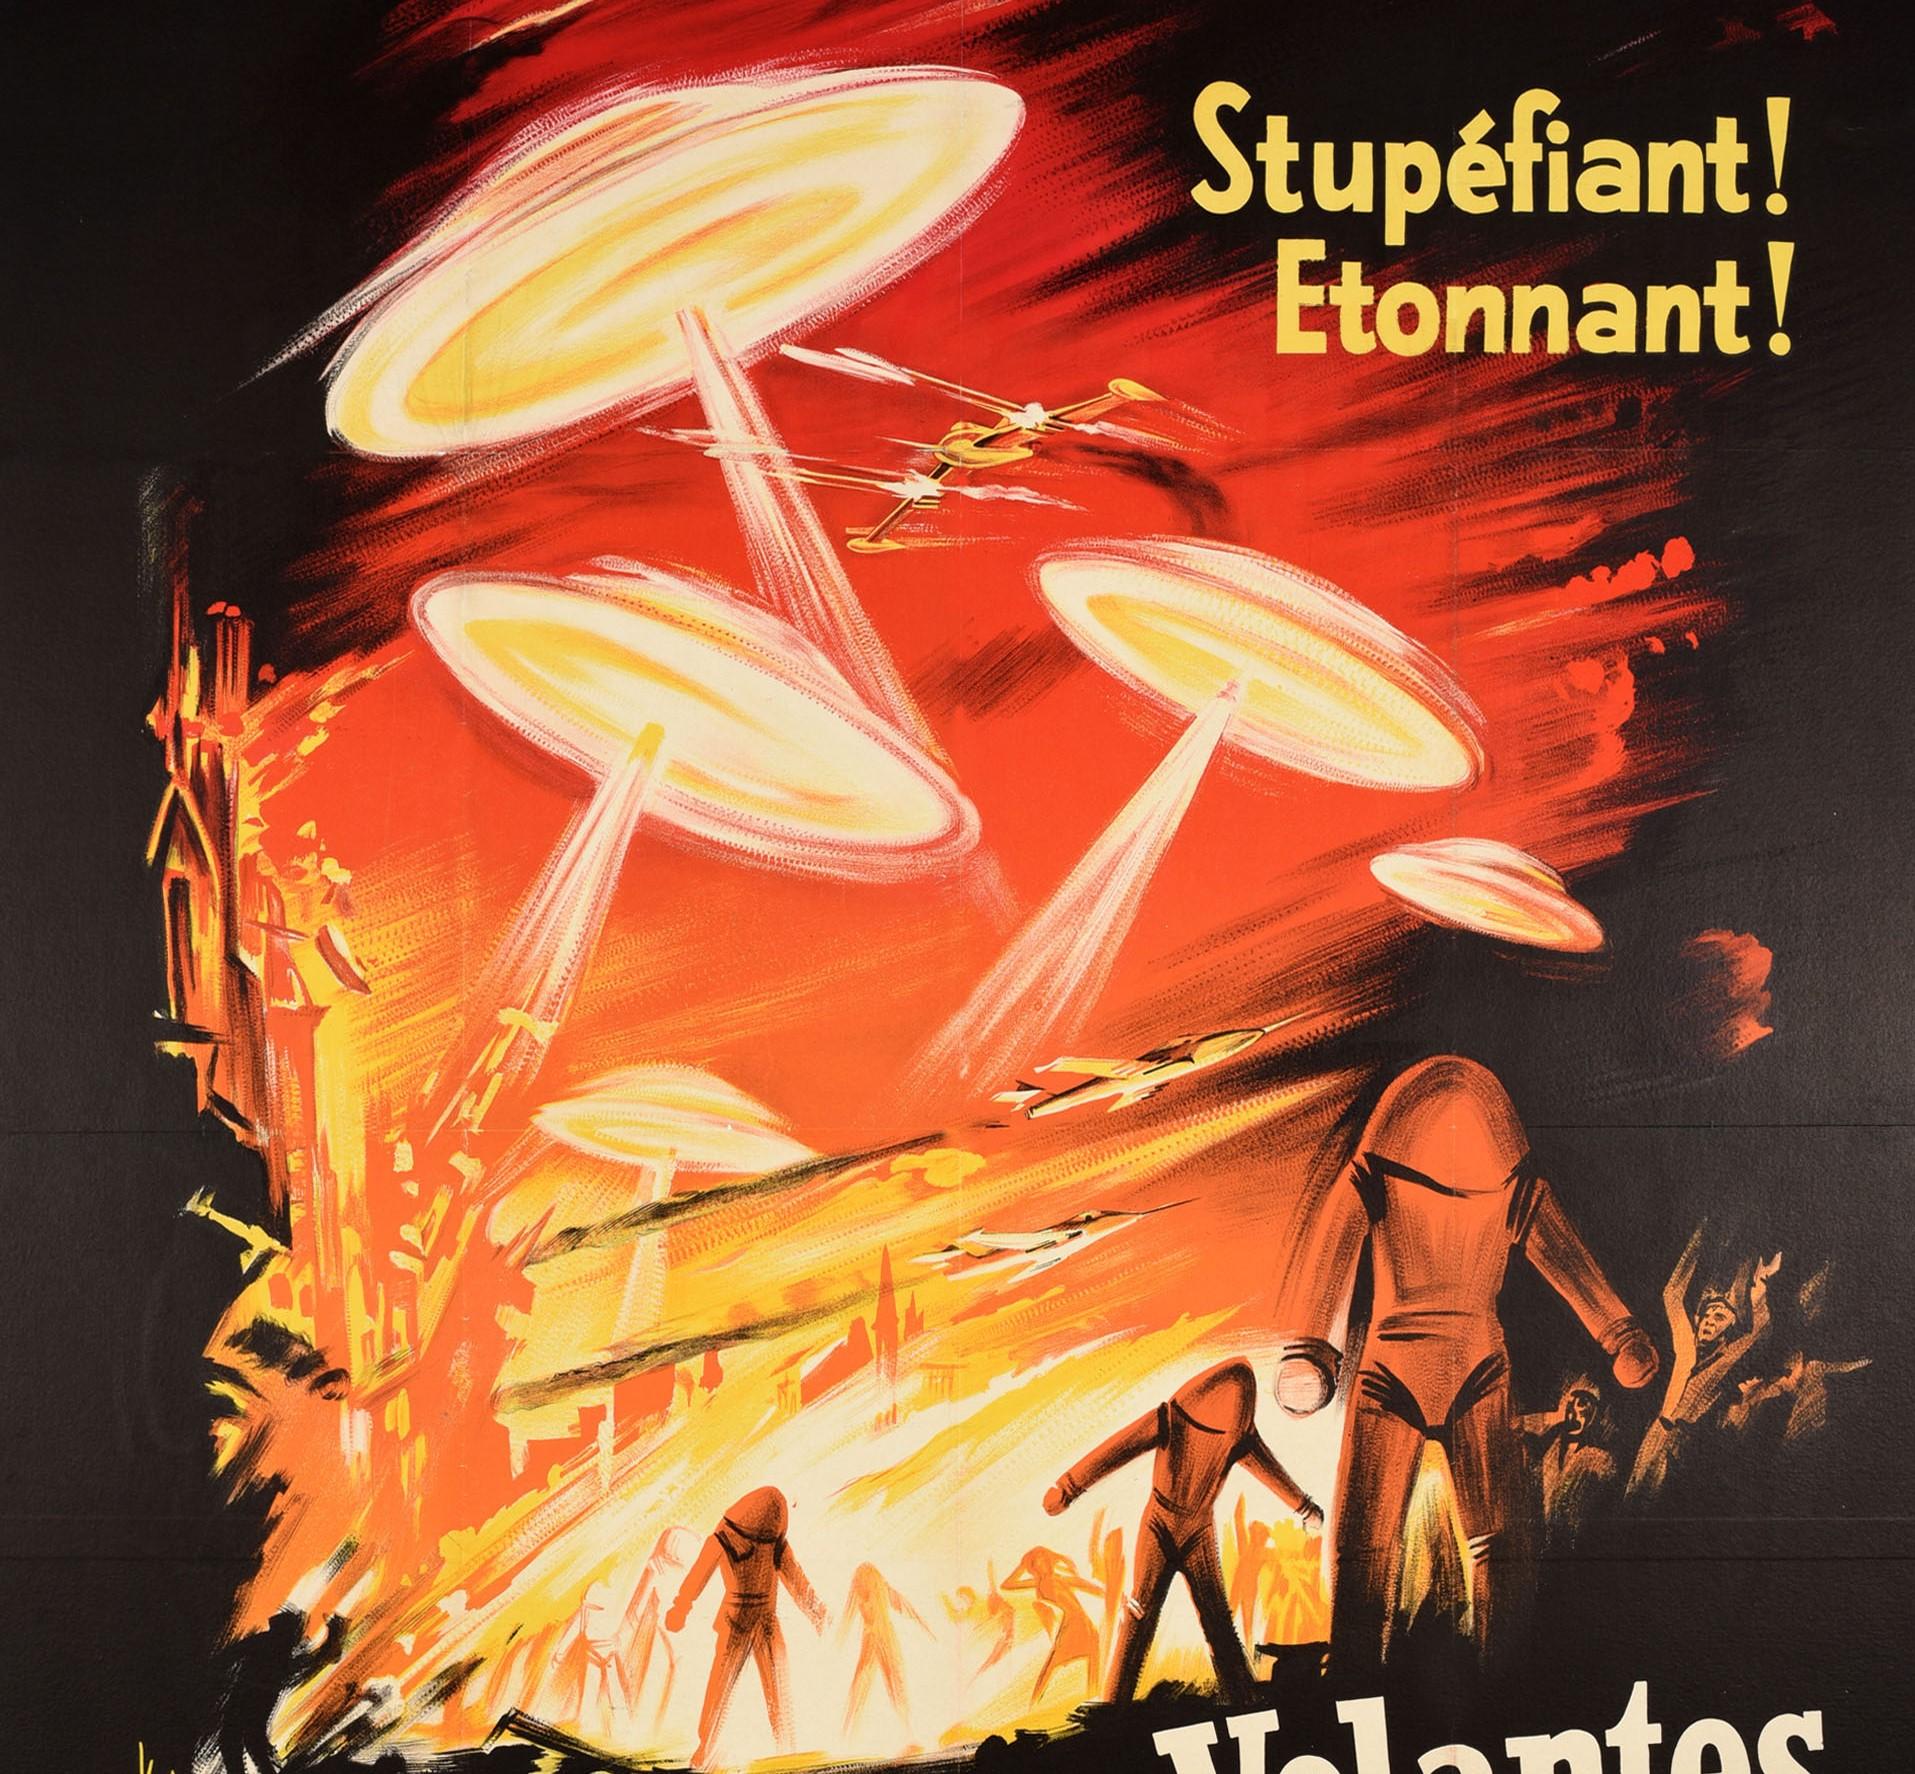 affiche de film de science fiction